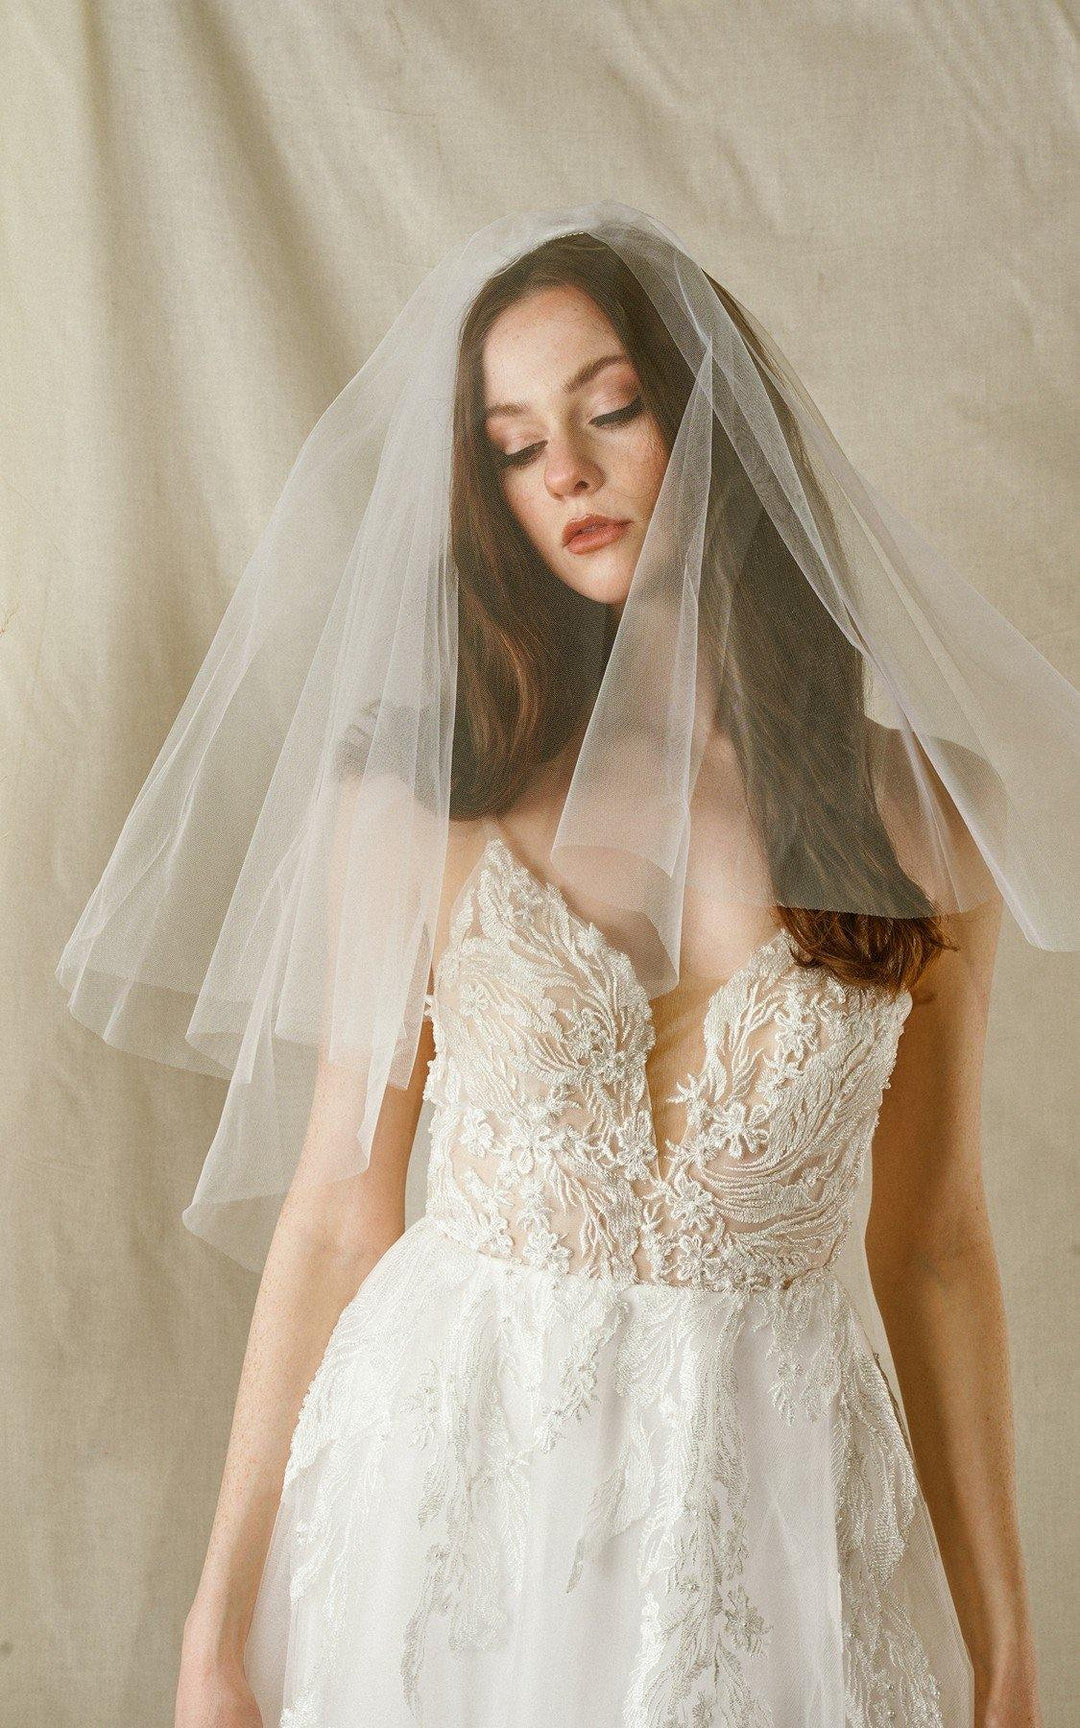 Why Do Brides Wear Veils? - Cinderella's Closet